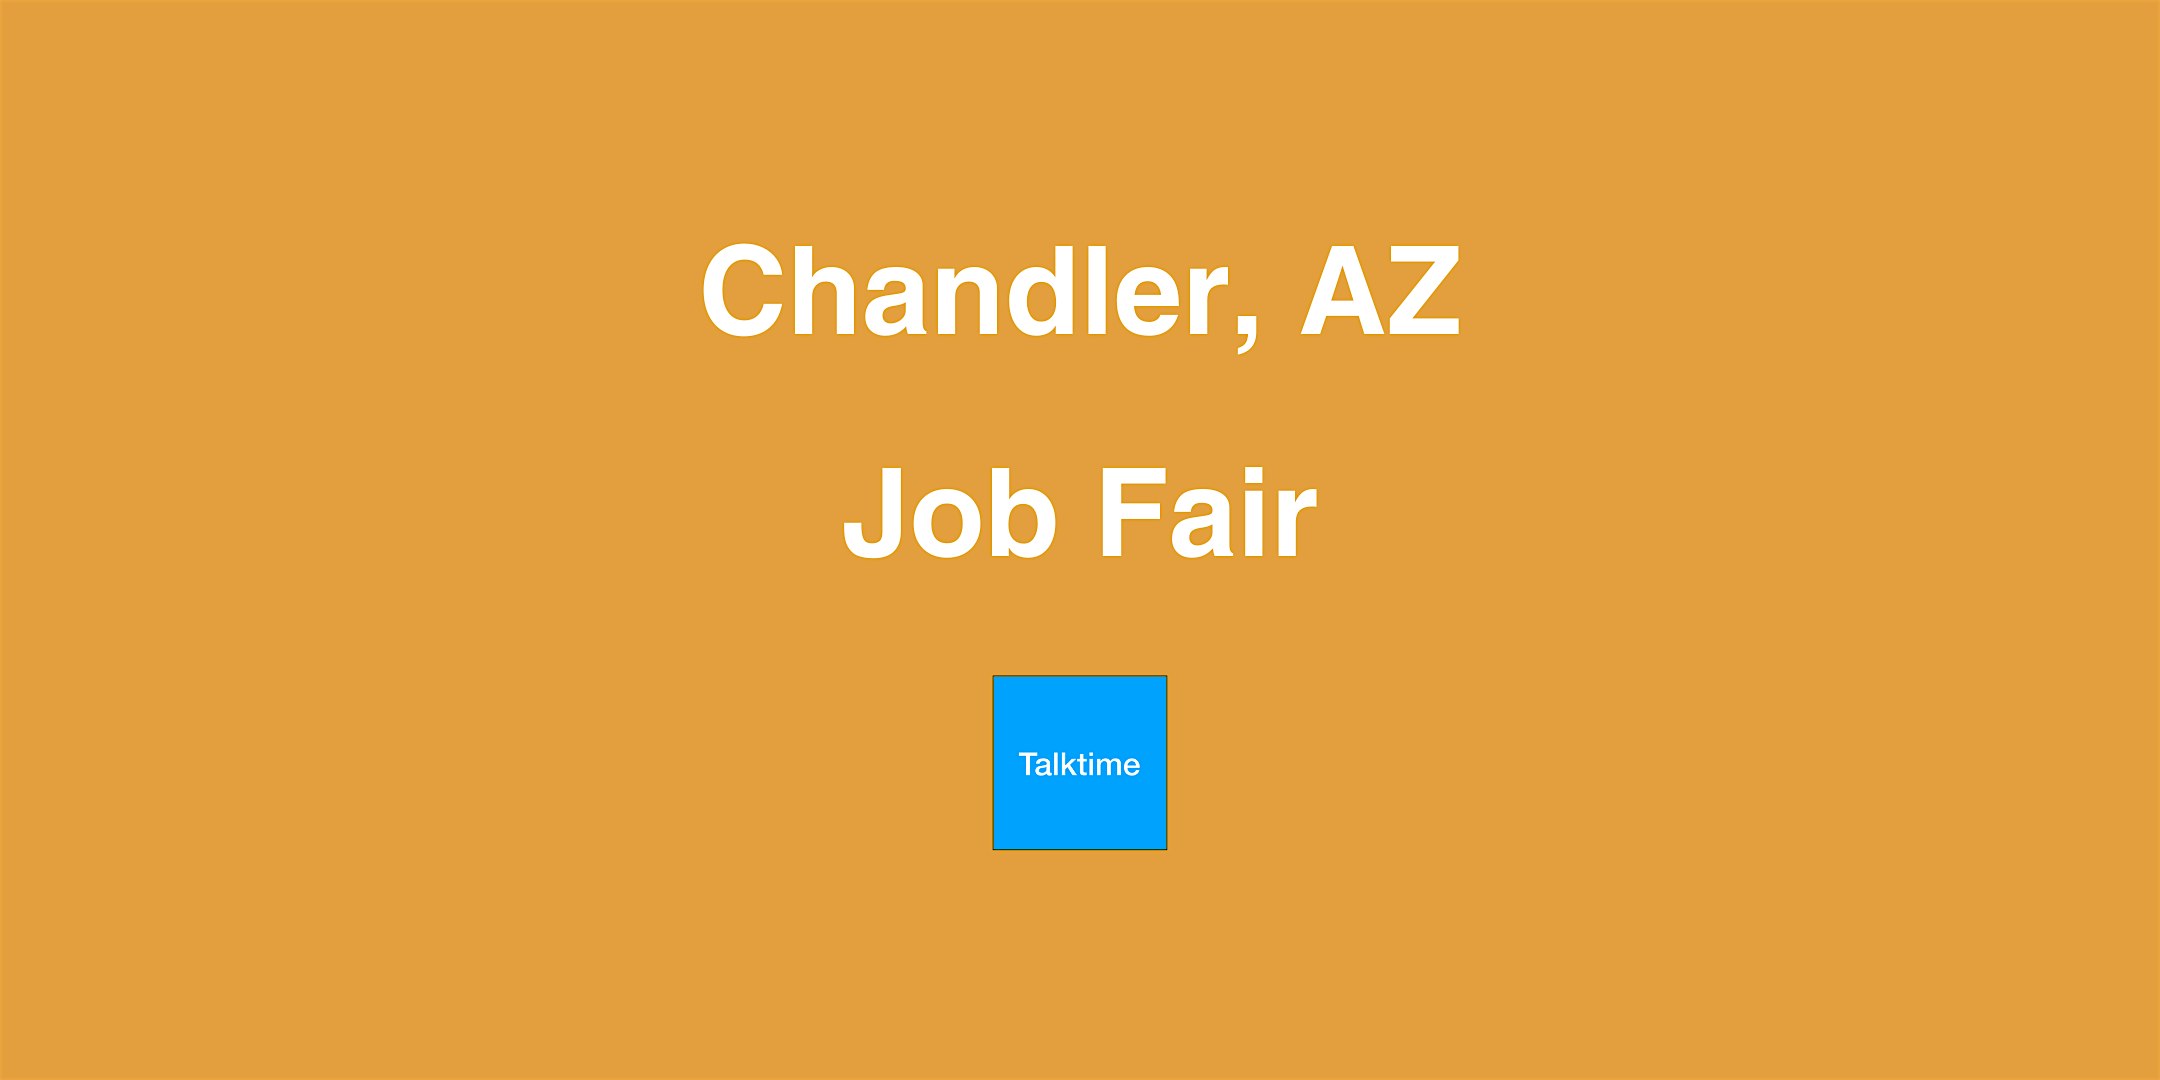 Job Fair - Chandler